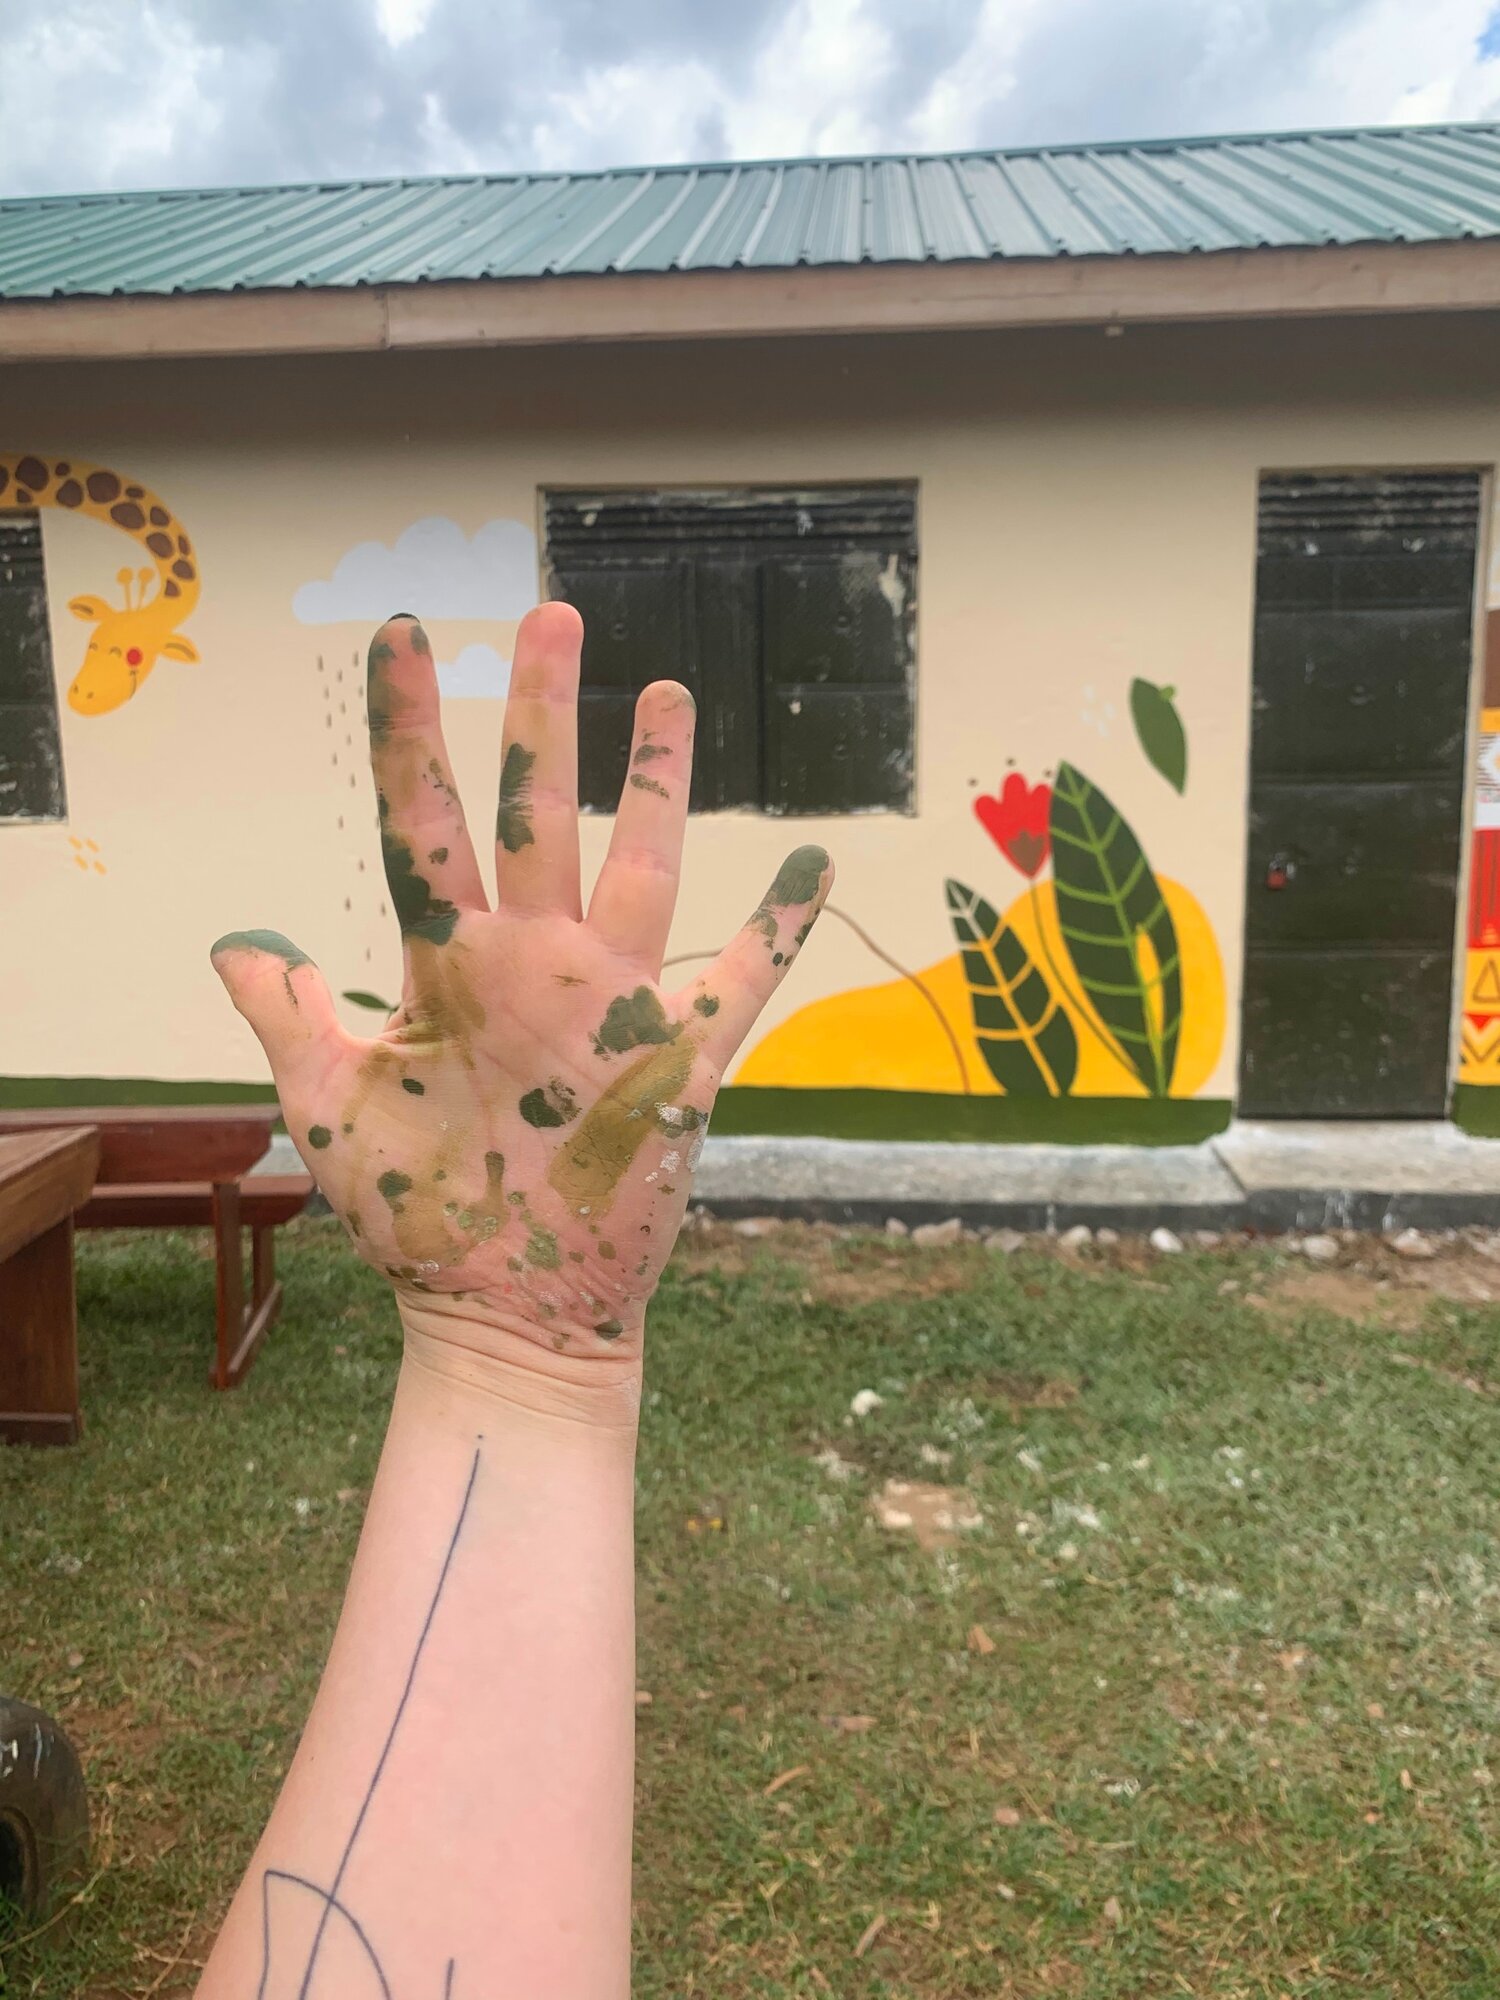 A dzsungel közepén, a manafwai iskola a művészlány keze vonásait viseli magán.